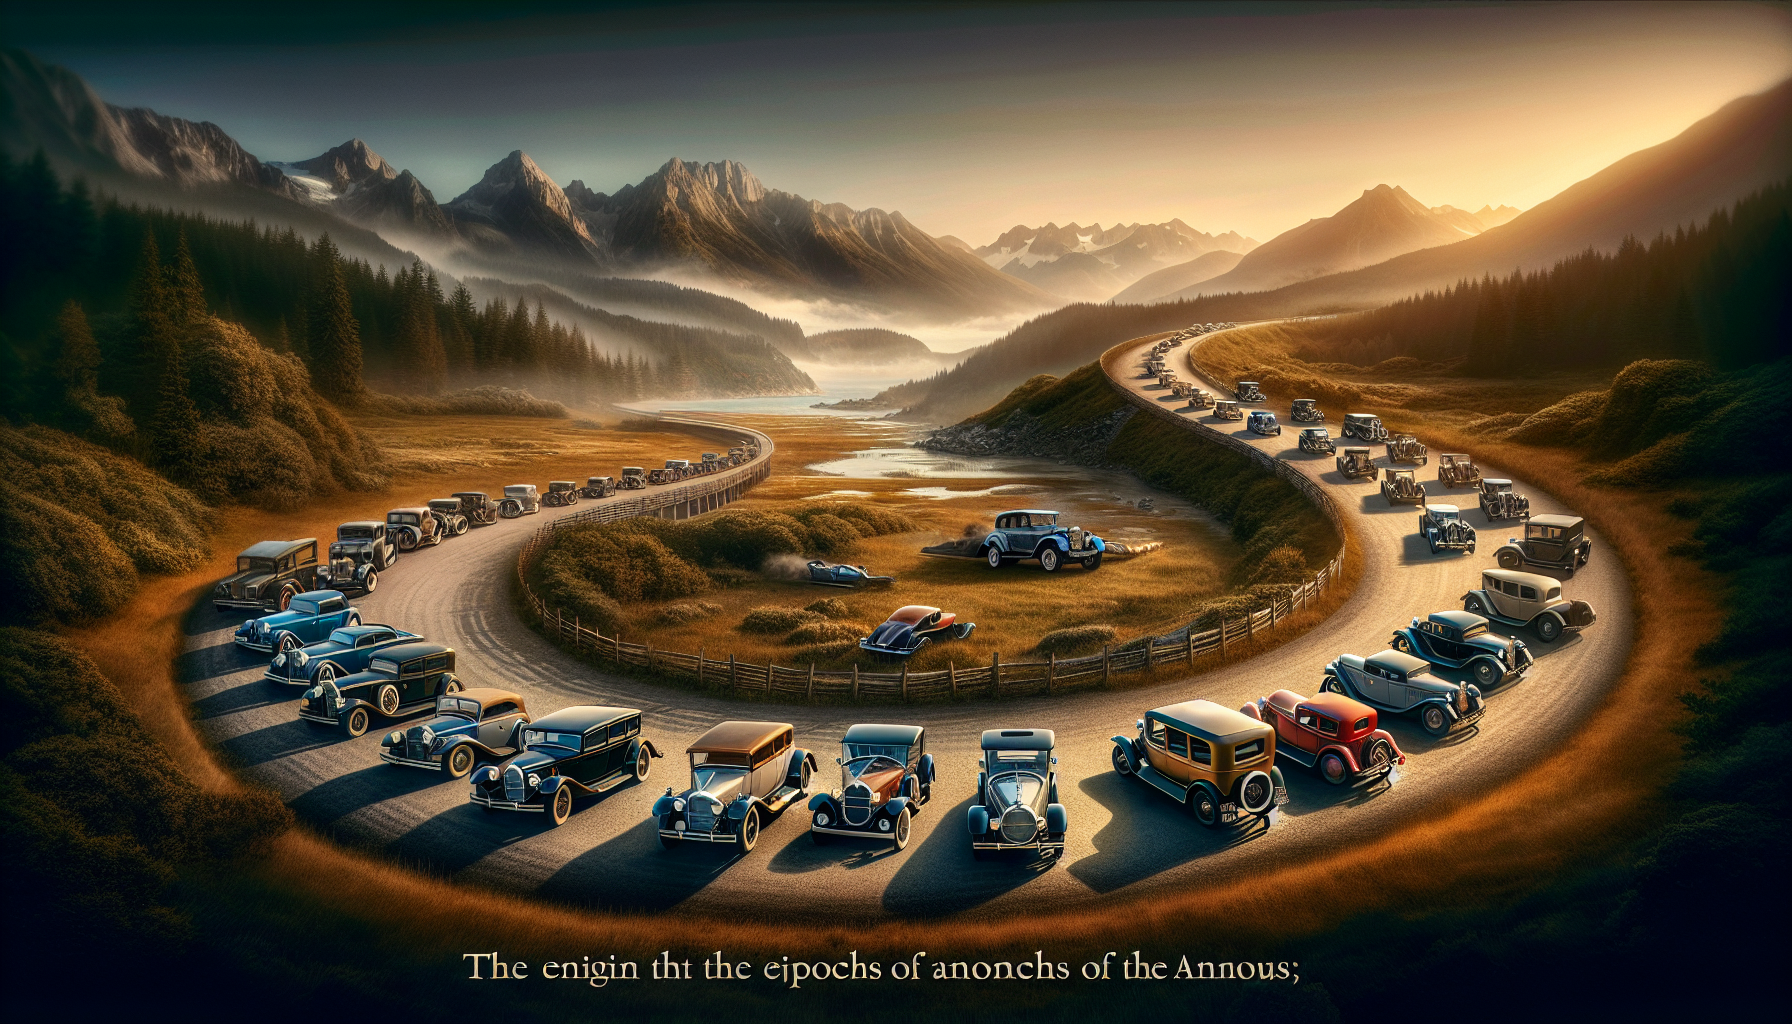 découvrez les voitures qui ont marqué leur époque de manière emblématique et ont marqué l'histoire de l'automobile. explorez l'impact et l'héritage laissé par ces véhicules emblématiques.